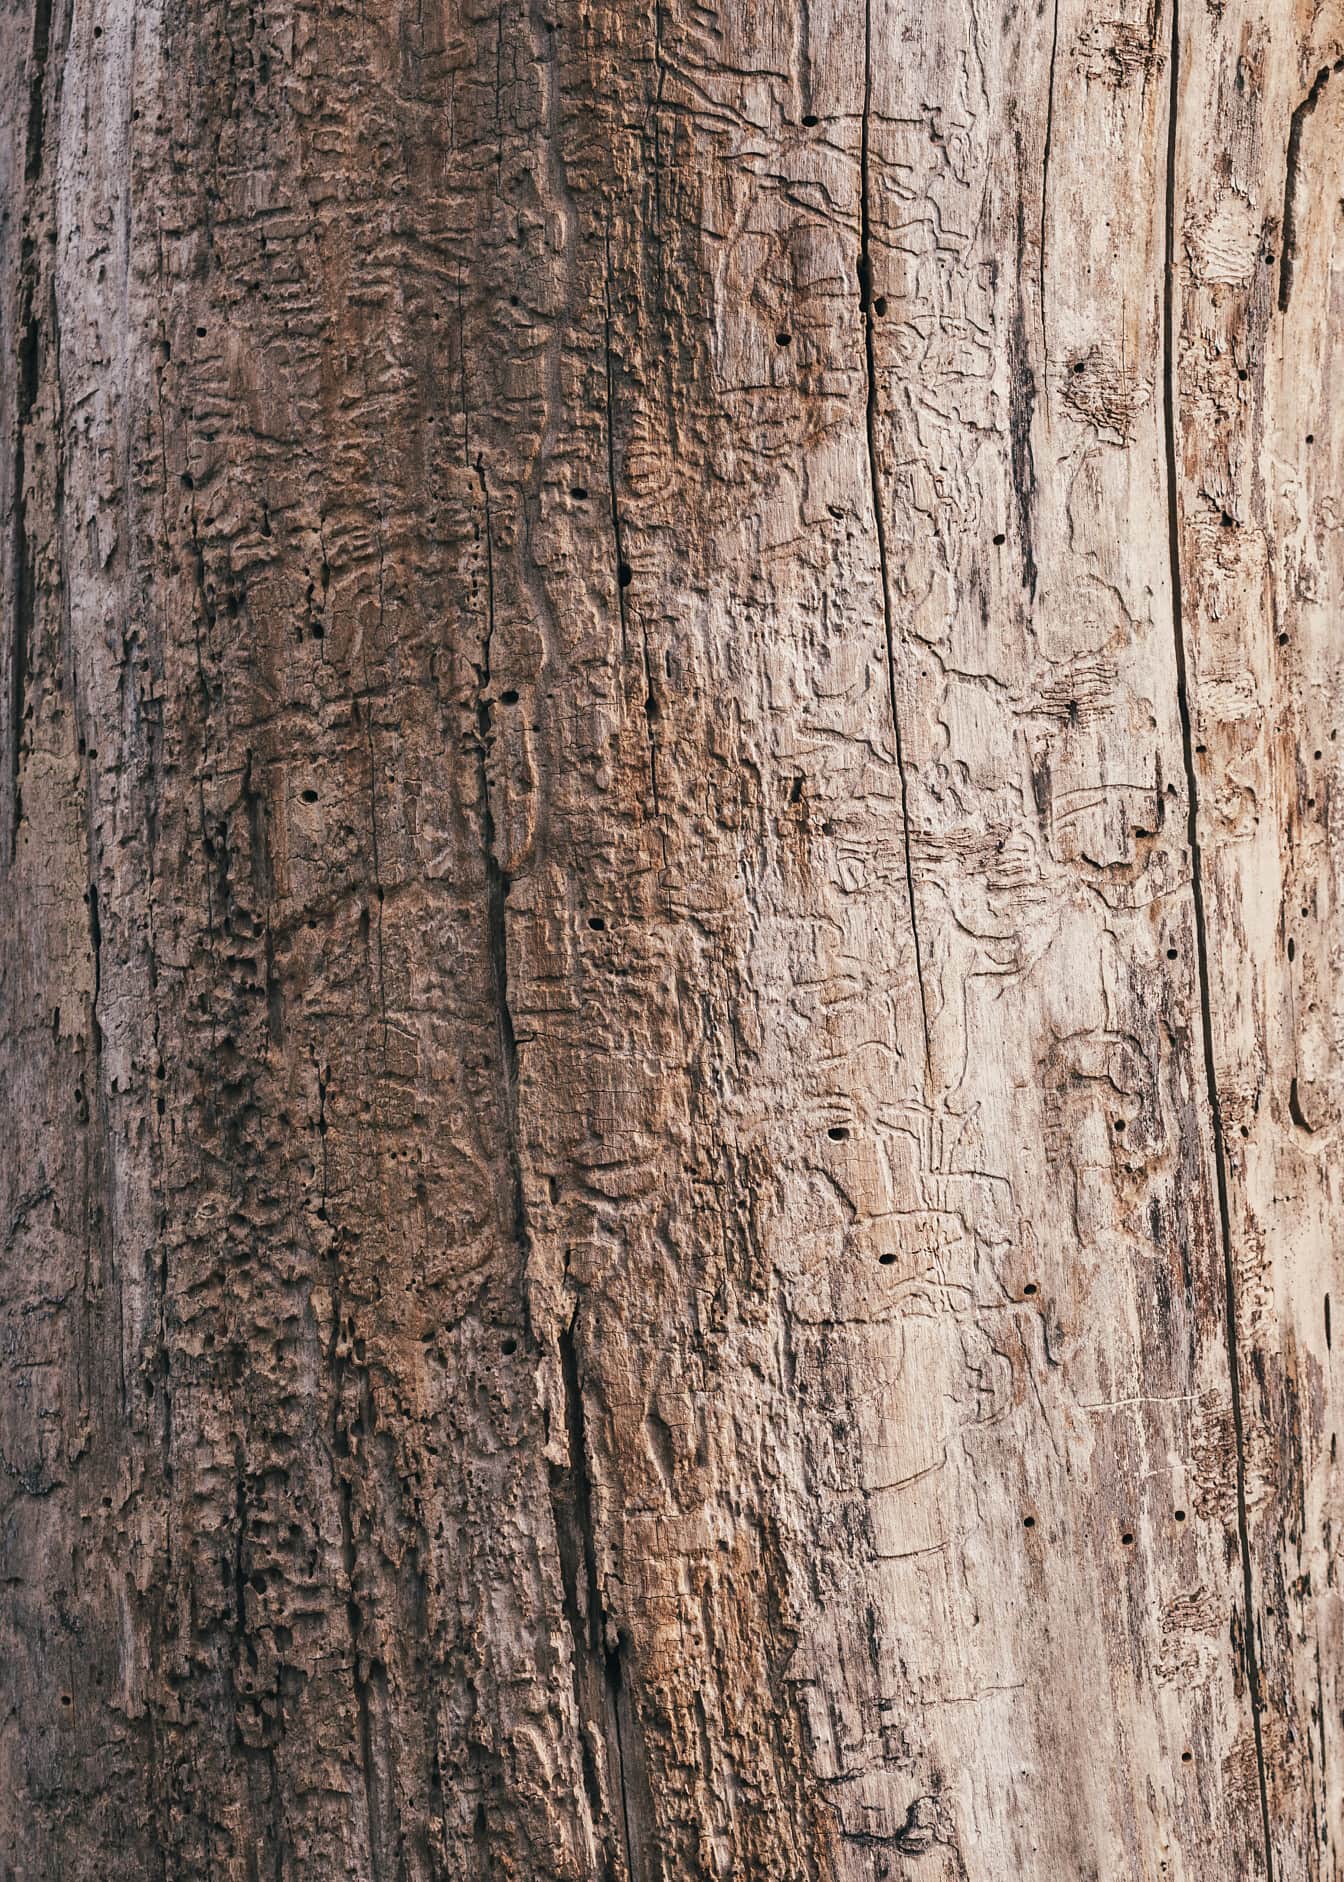 Kaba kuru desenli kahverengi ağaç gövdesinin yakın çekim dokusu